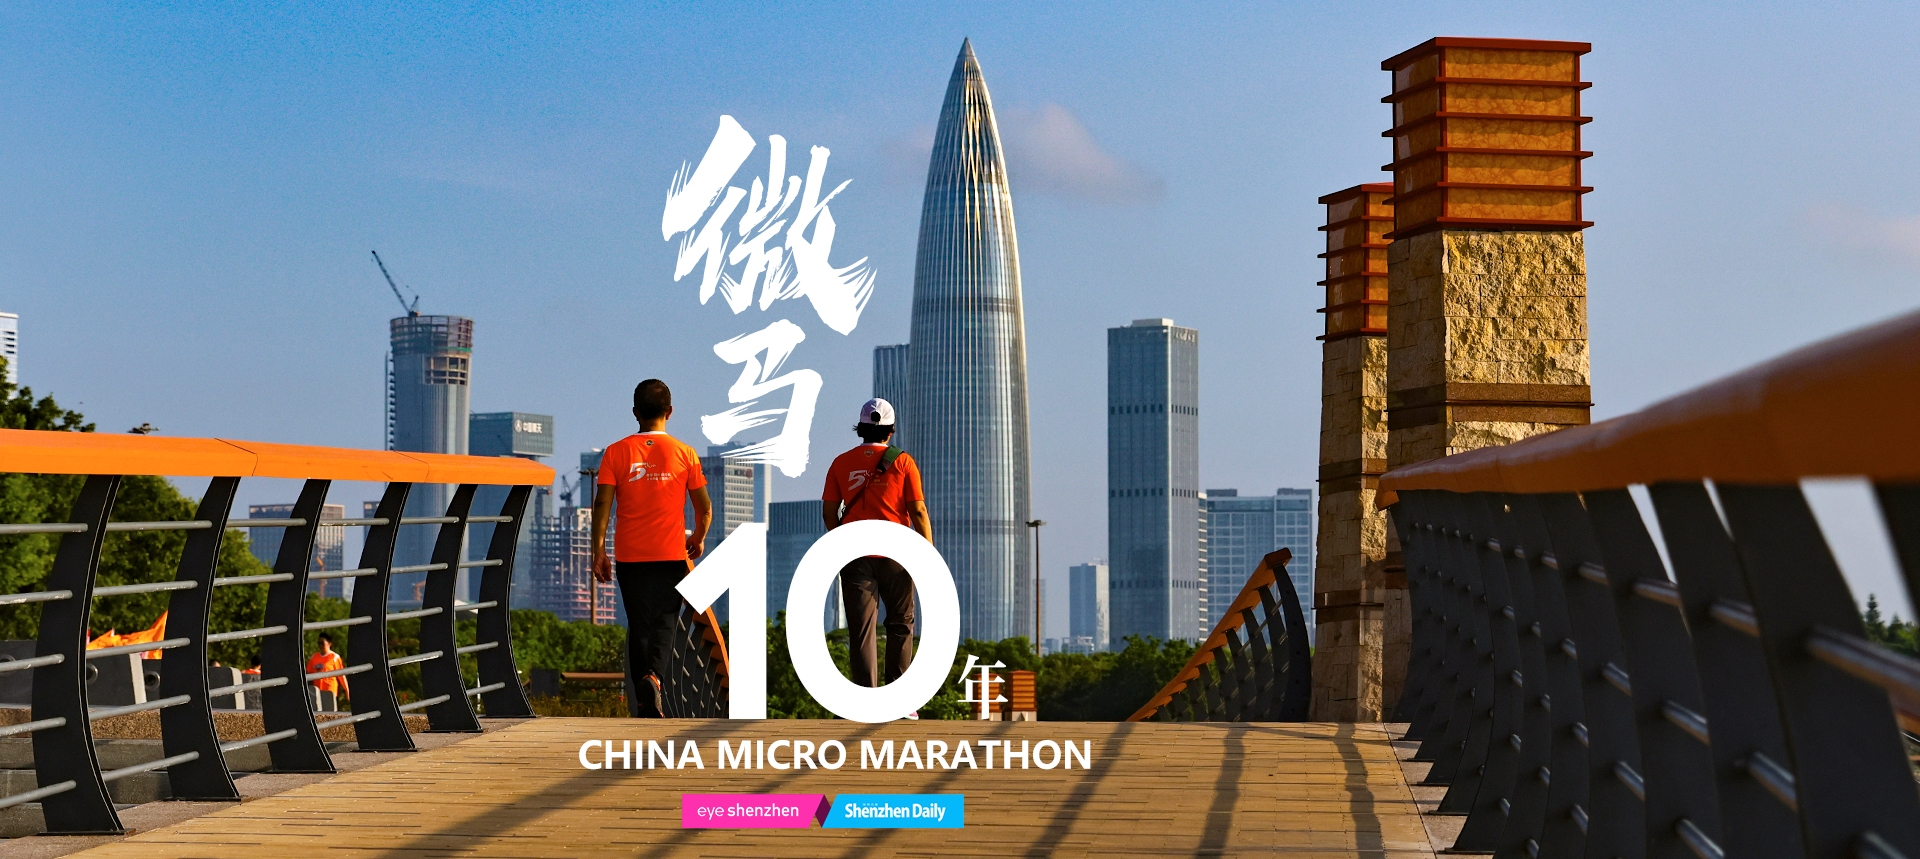 Evento de corrida comemora 10º aniversário da Micro Maratona da China